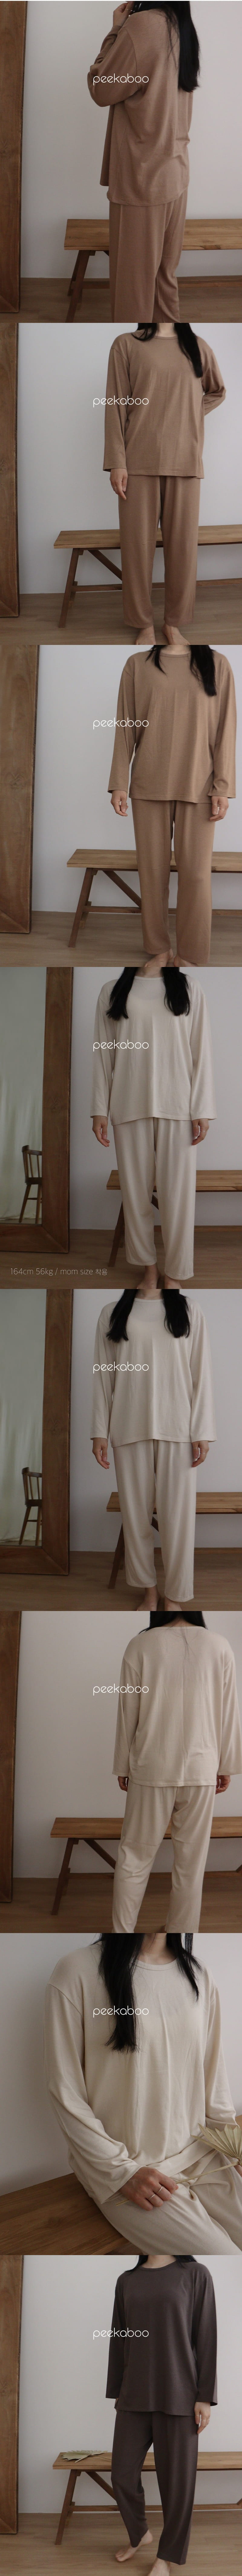 Peekaboo - Korean Women Fashion - #womensfashion - Soft Dad - 3